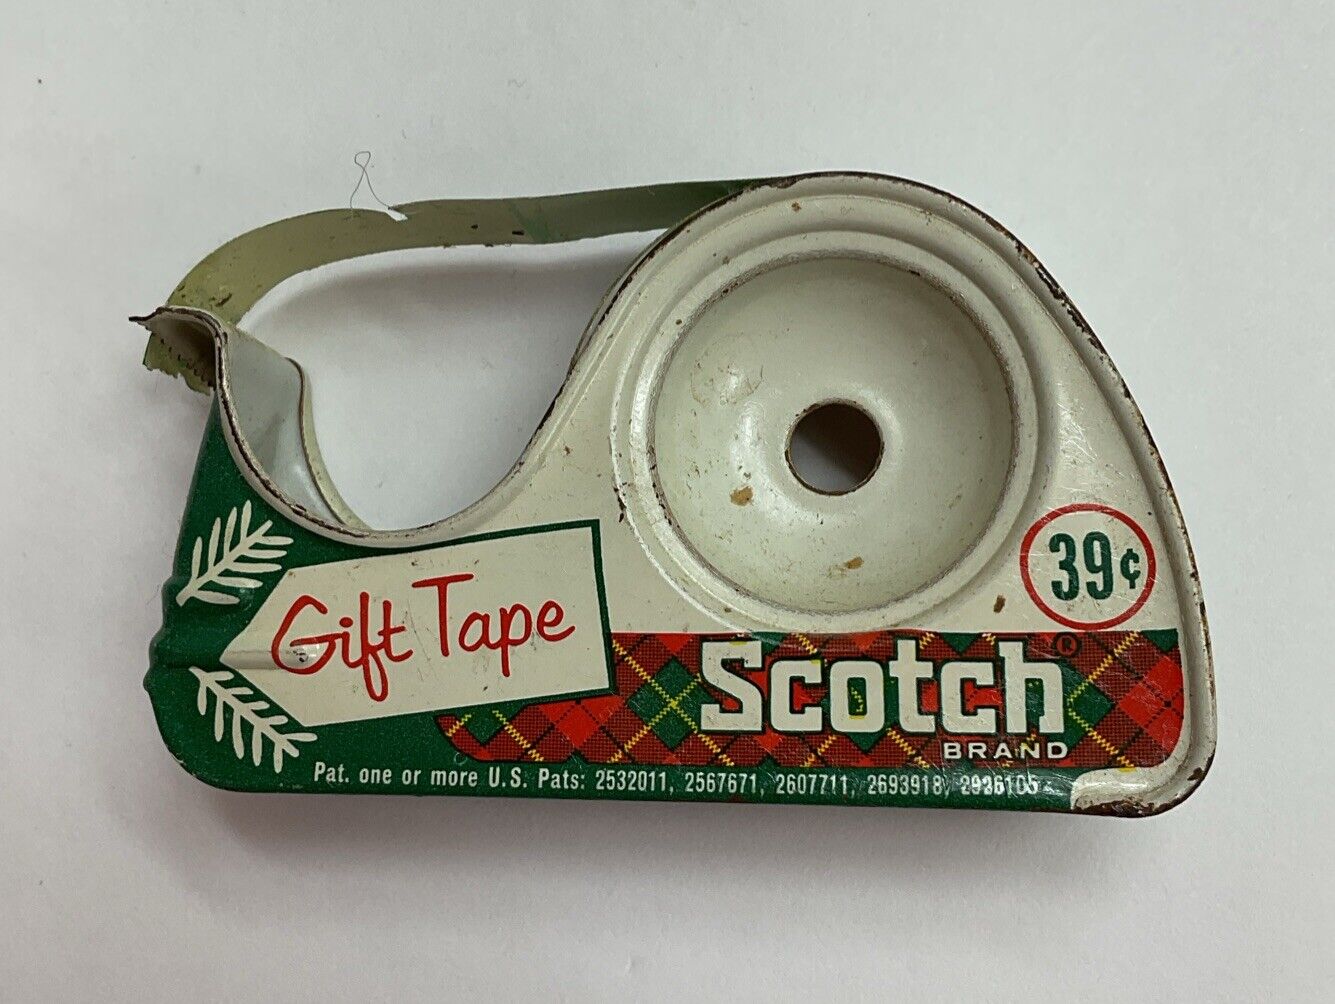 Vtg Christmas Scotch Gift Tape Plaid Tin Dispenser USA Made 39¢ Original Price